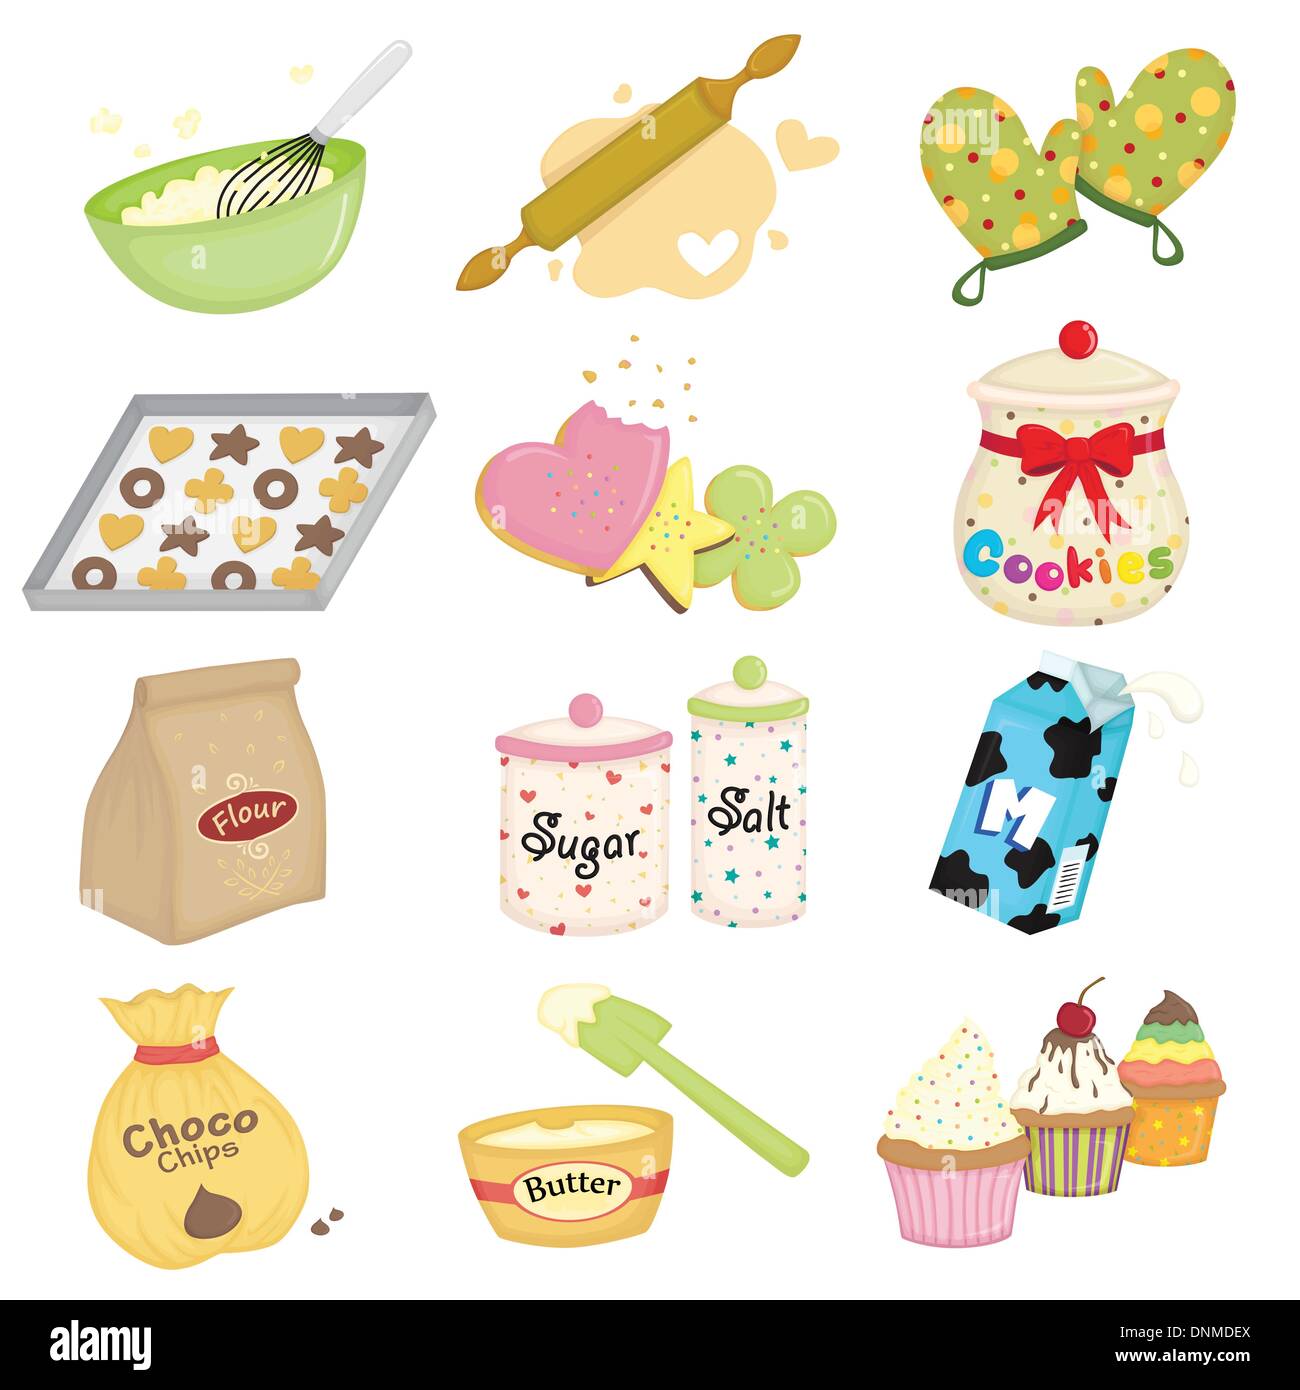 Eine Vektor-Illustration von Backen und Küche Geschirr icons Stock Vektor